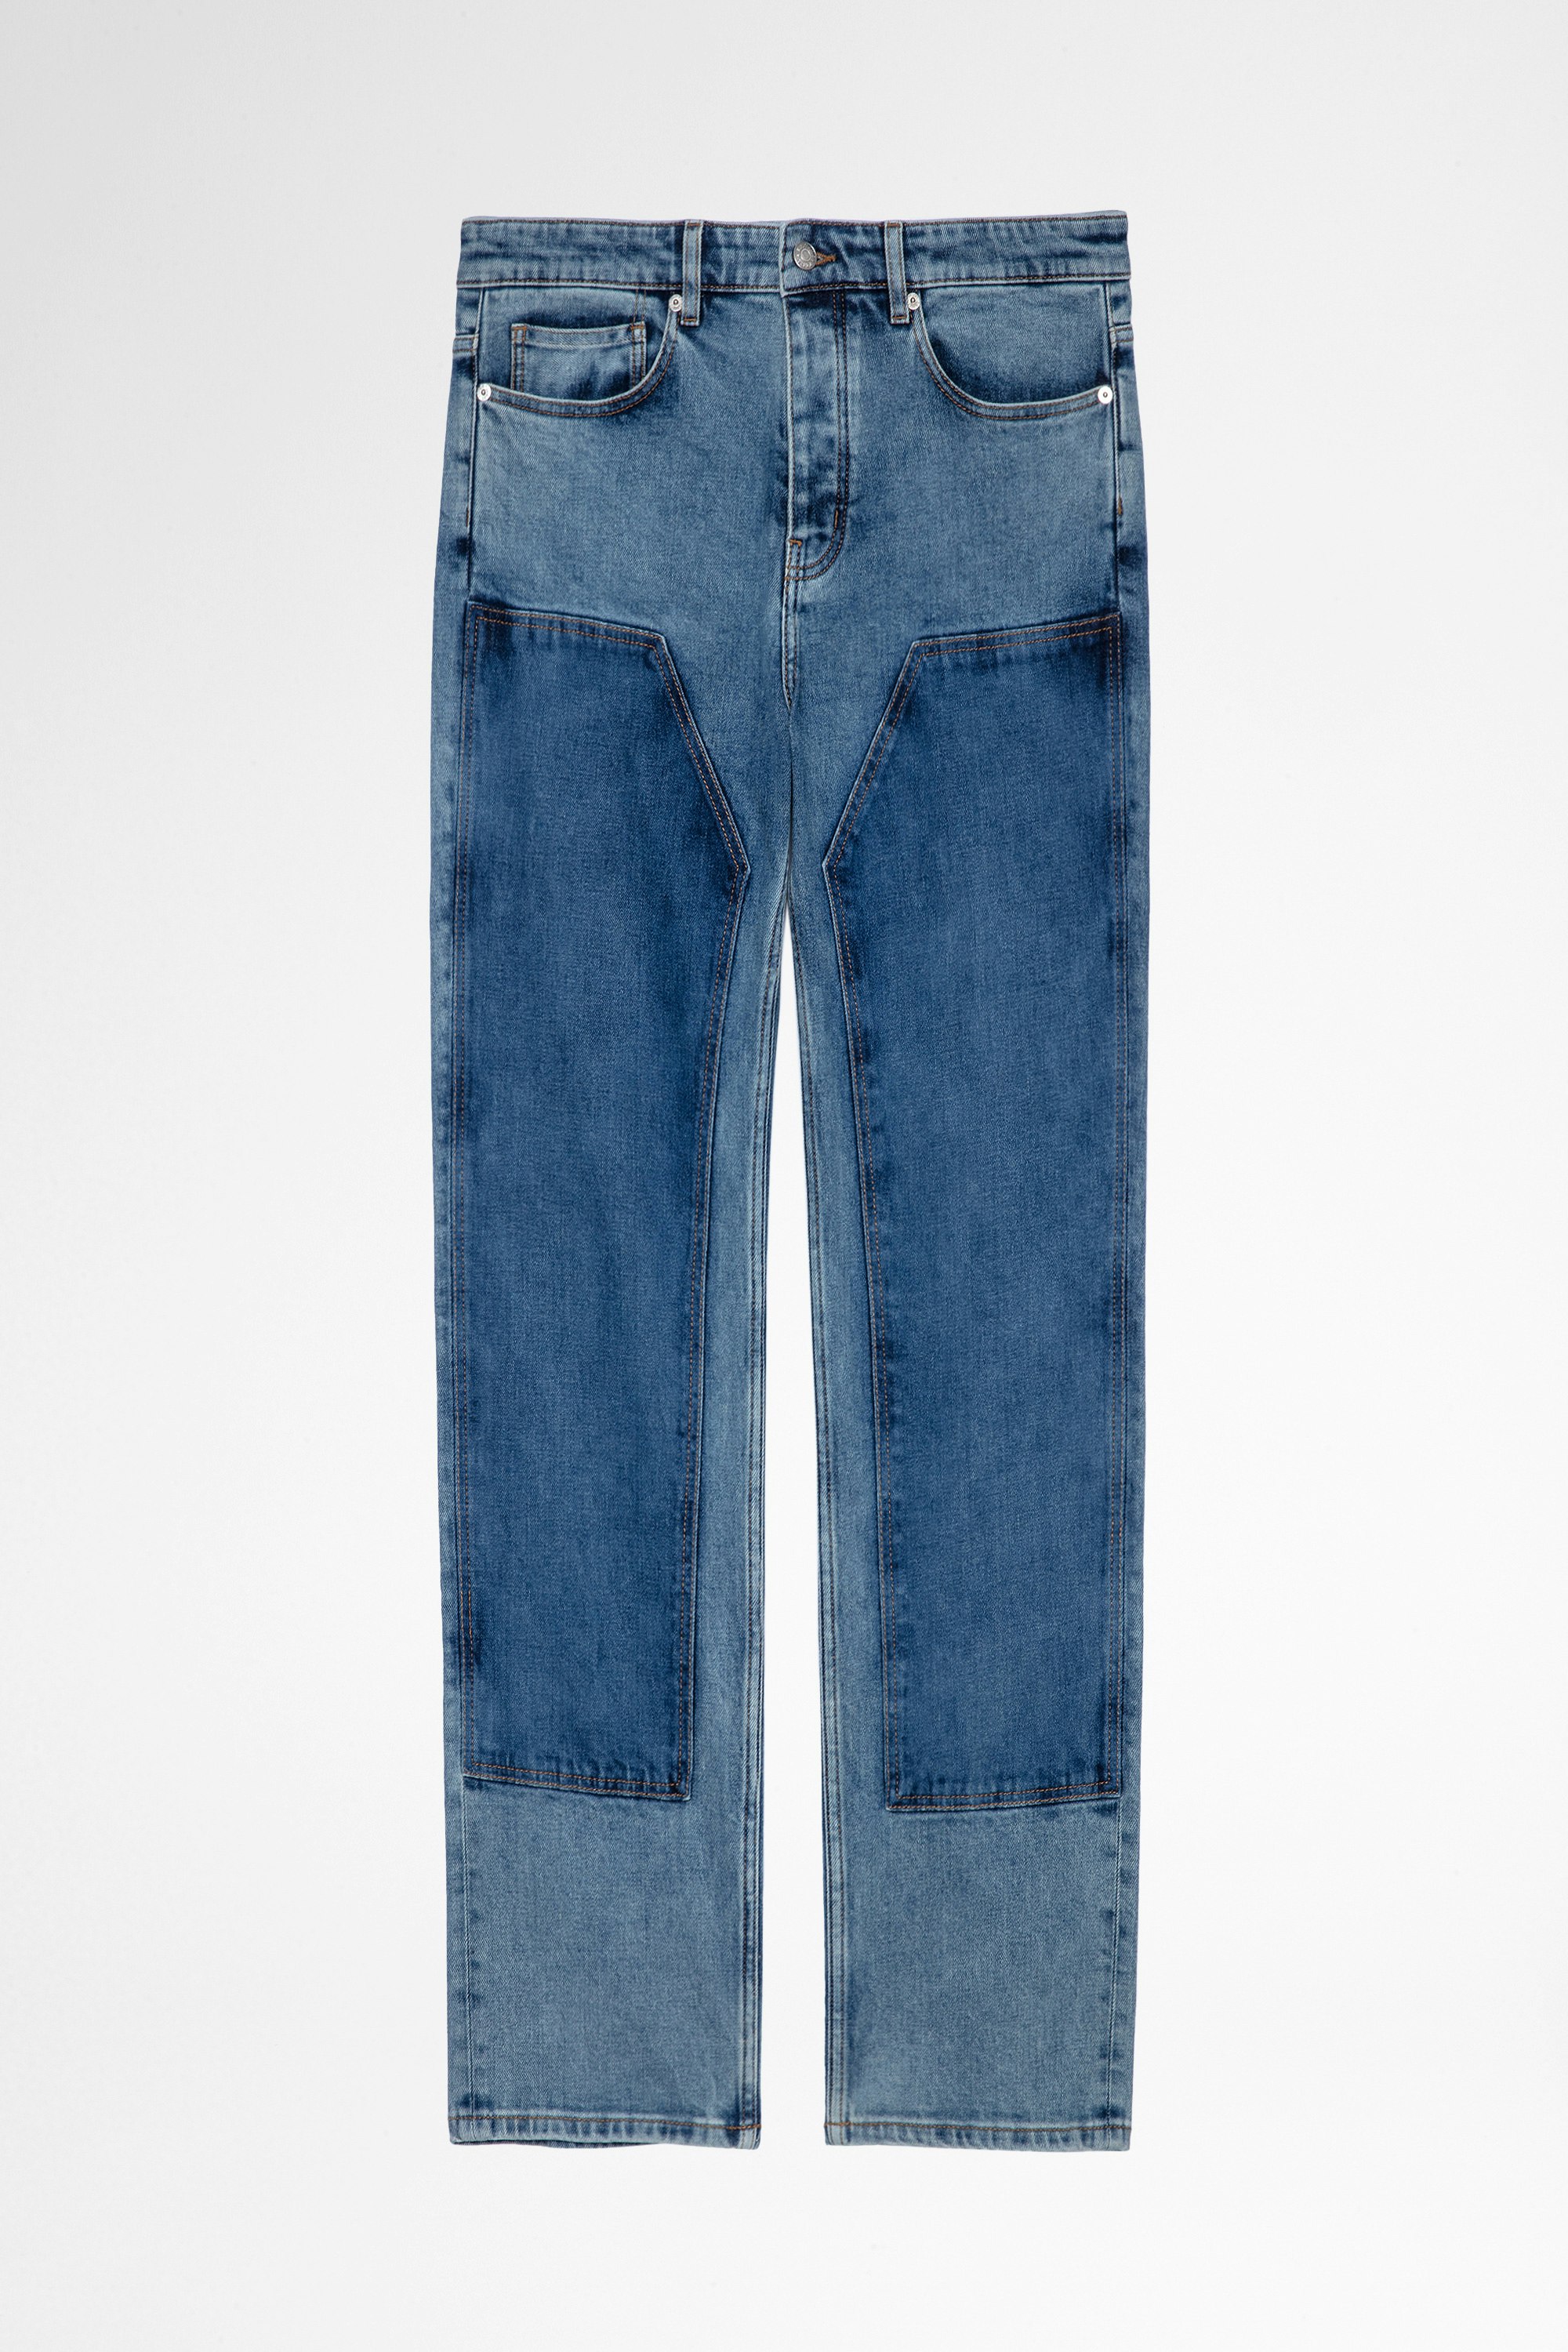 John ジンズ Men's contrasting blue denim jeans